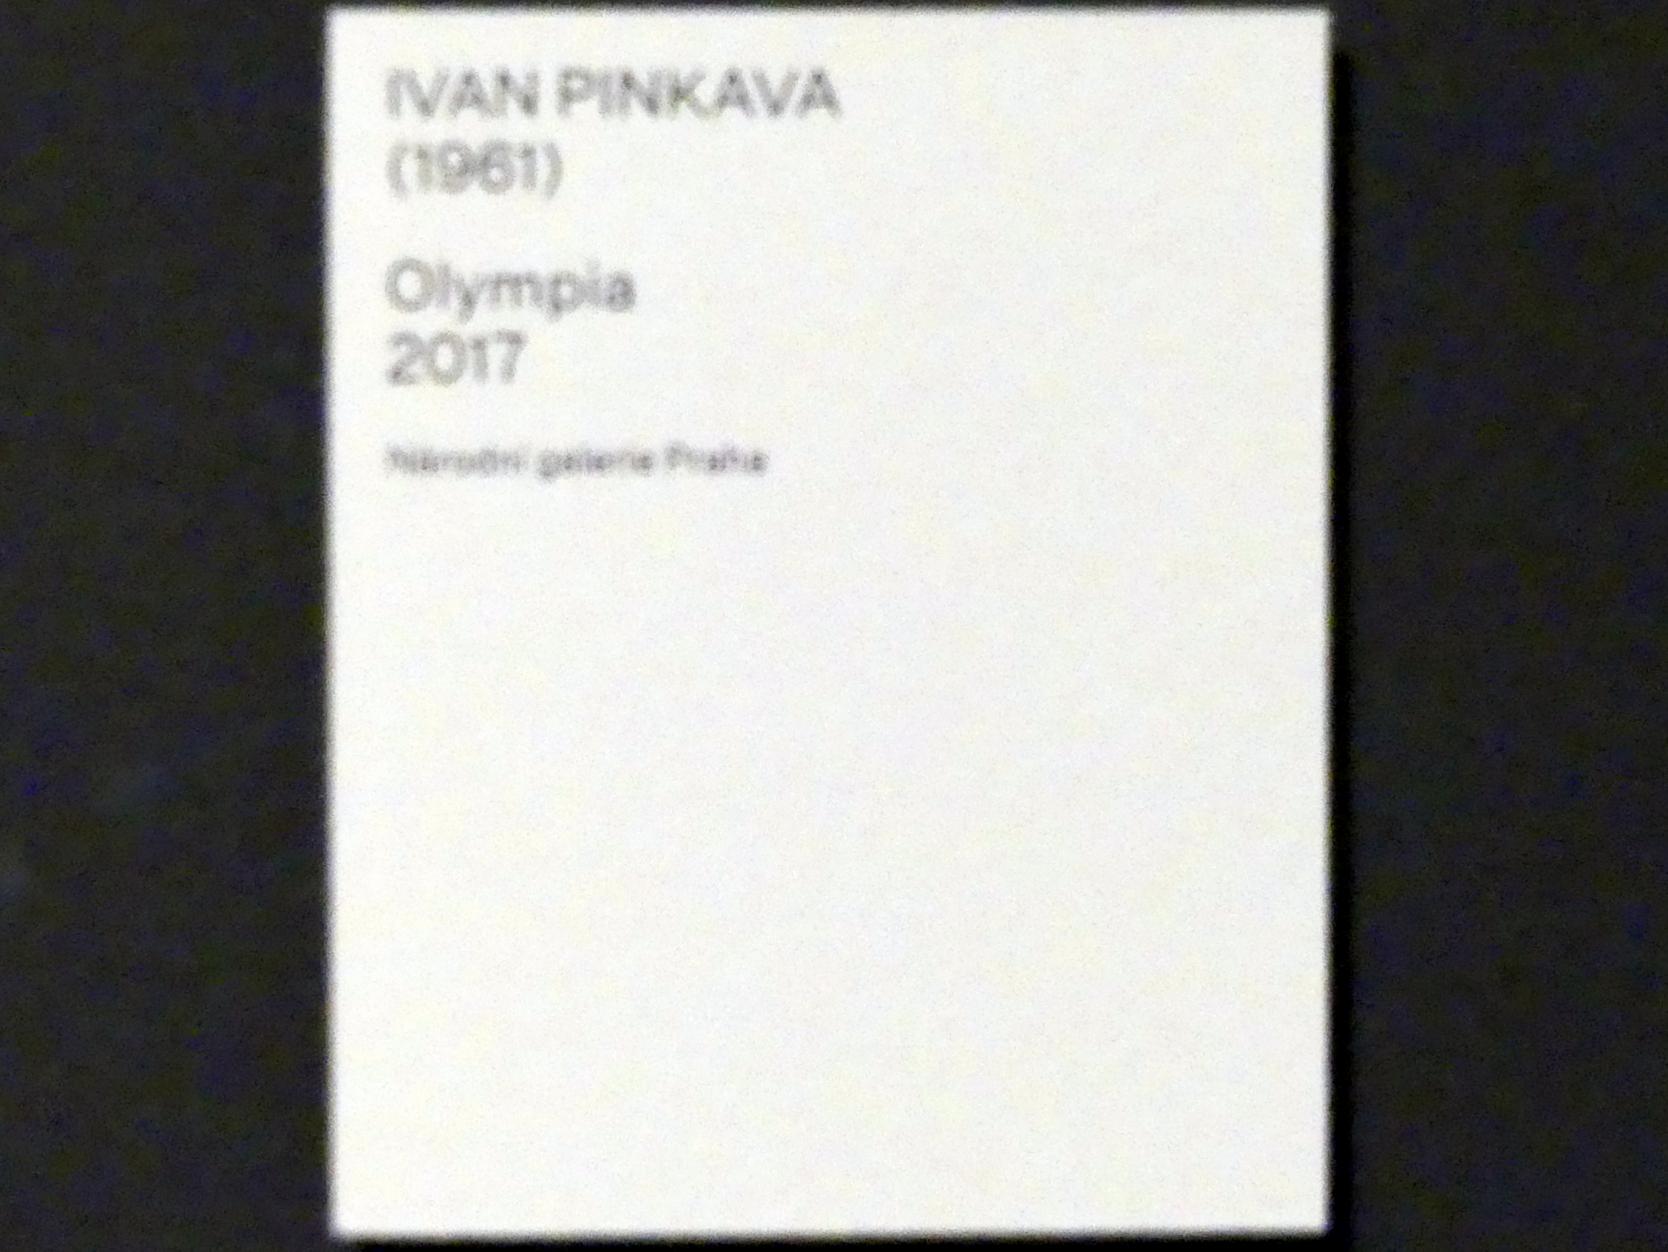 Ivan Pinkava (2017), Olympia, Prag, Nationalgalerie im Salm-Palast, Ausstellung "Möglichkeiten des Dialogs" vom 02.12.2018-01.12.2019, Saal 19, 2017, Bild 2/2